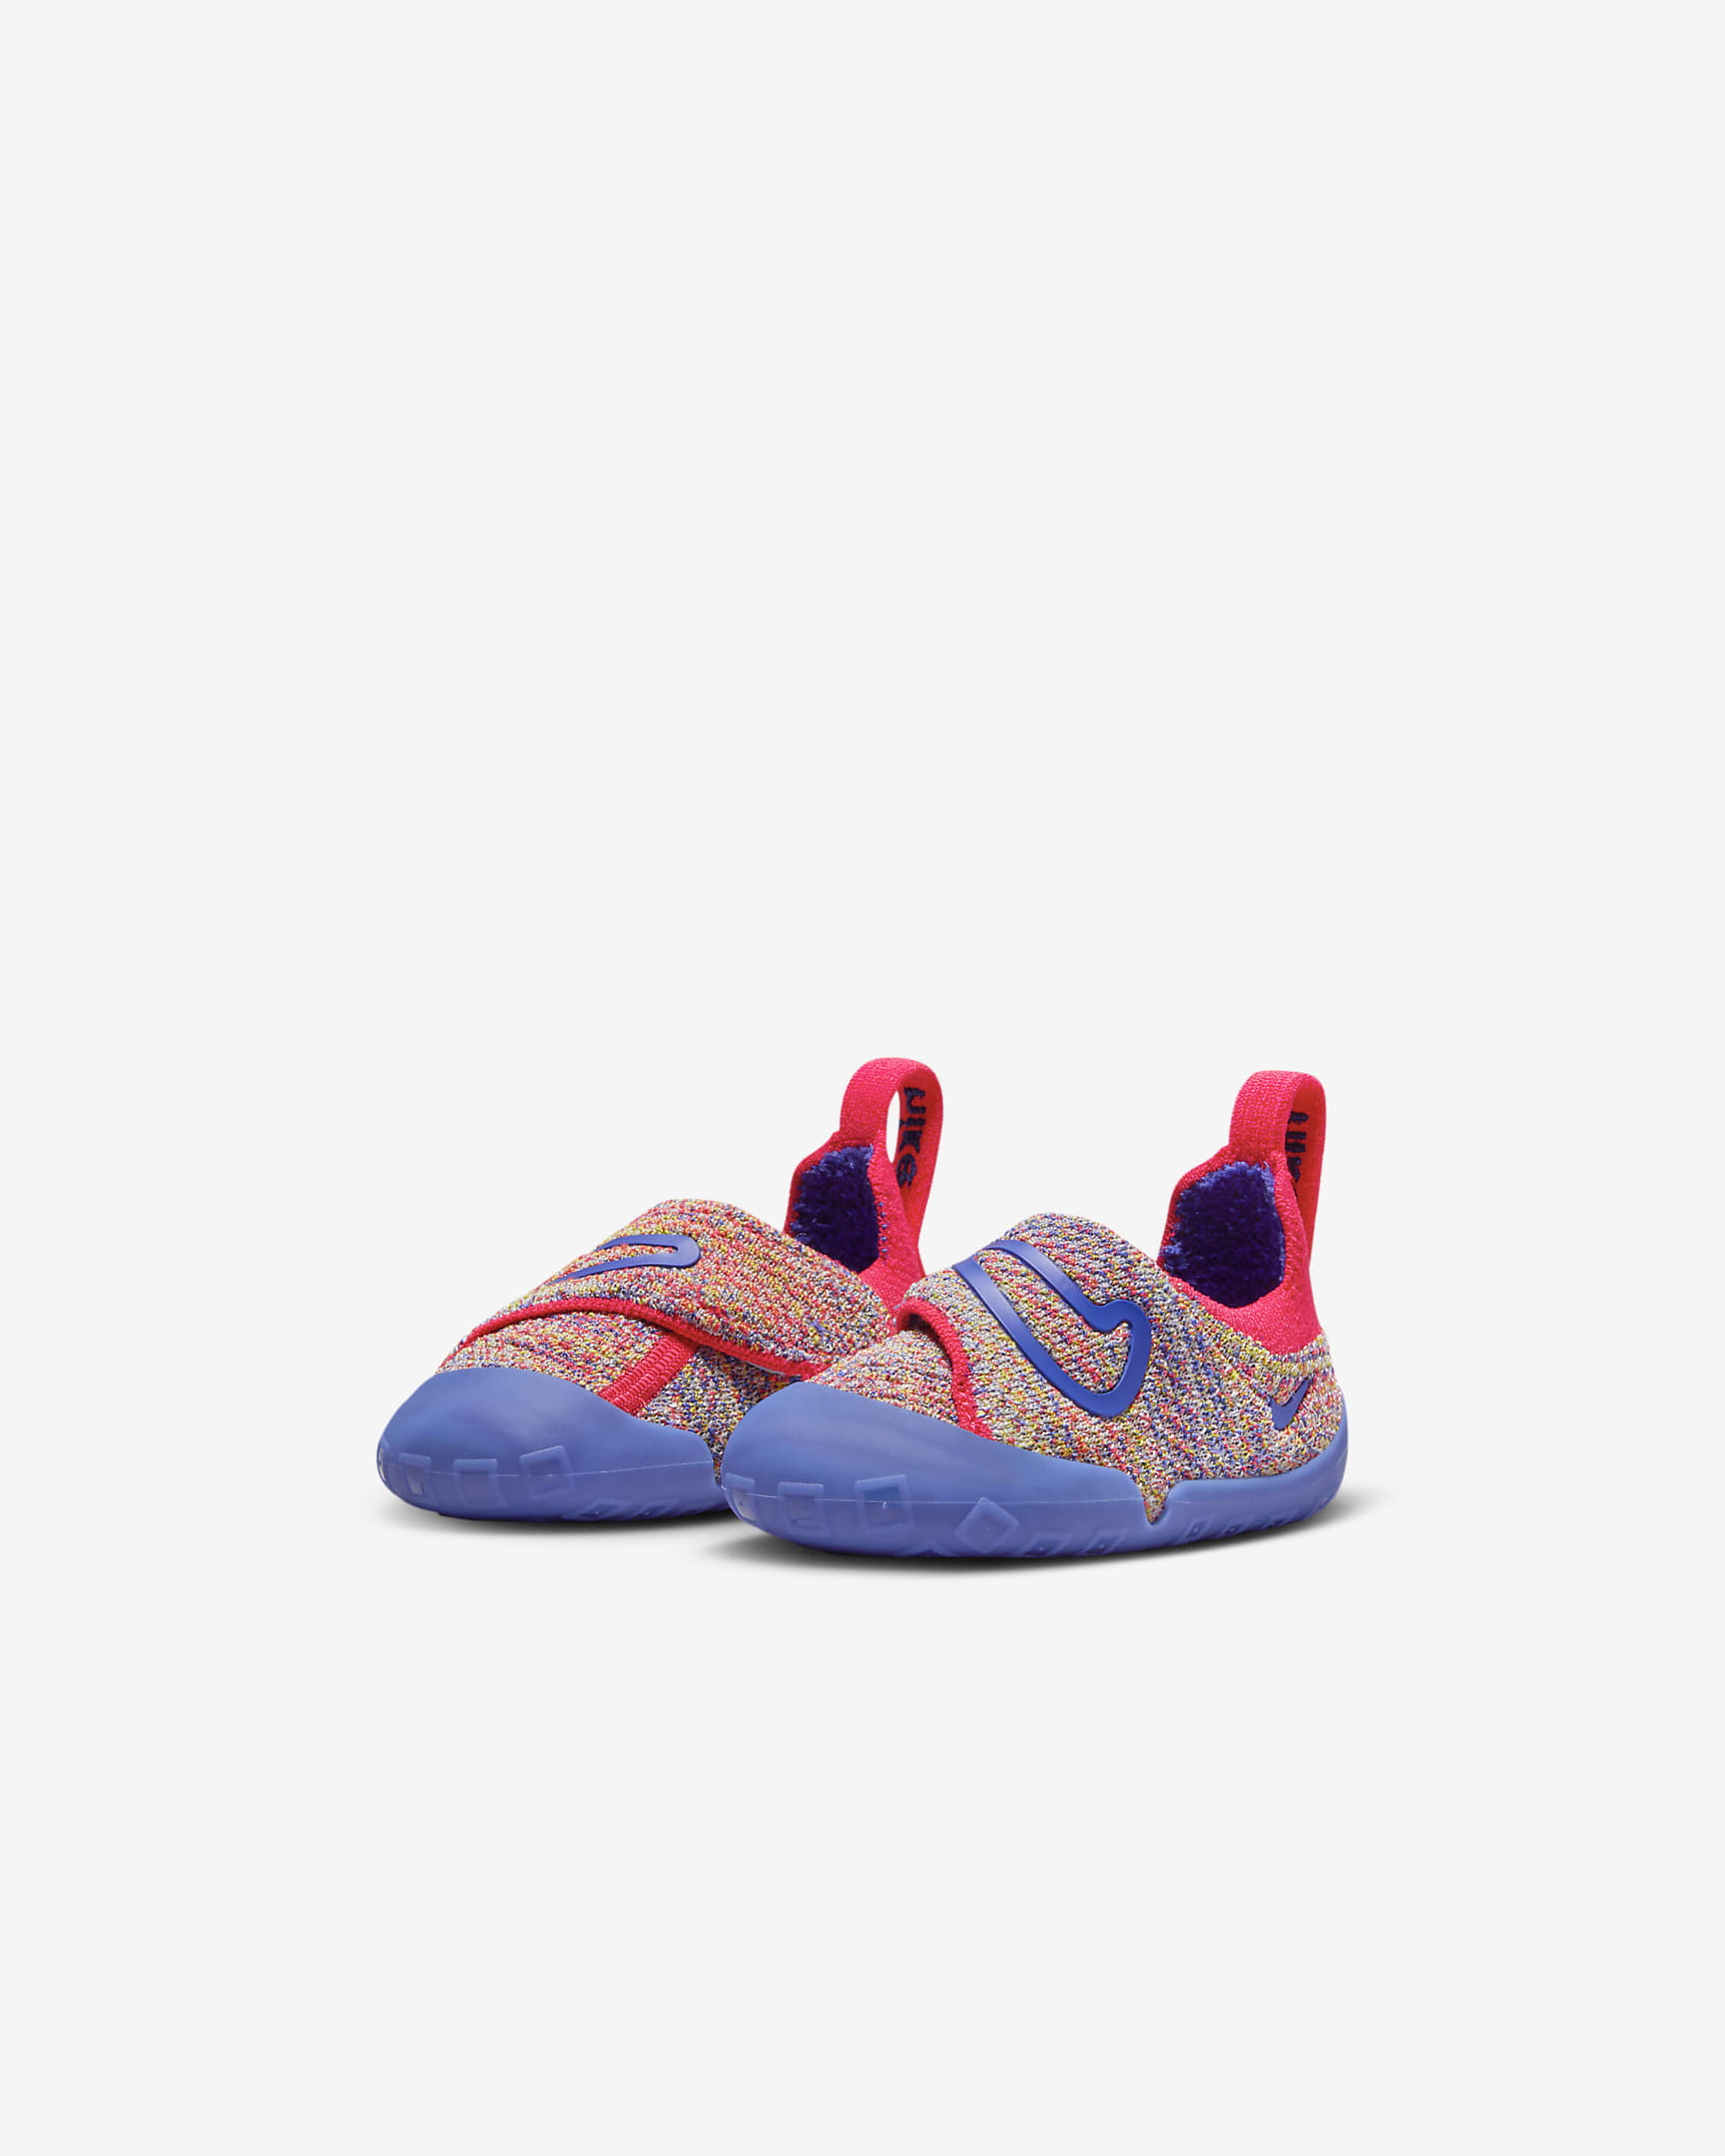 Nike Swoosh 1 Schuh für Babys und Kleinkinder - Sail/Siren Red/Vivid Sulfur/Game Royal